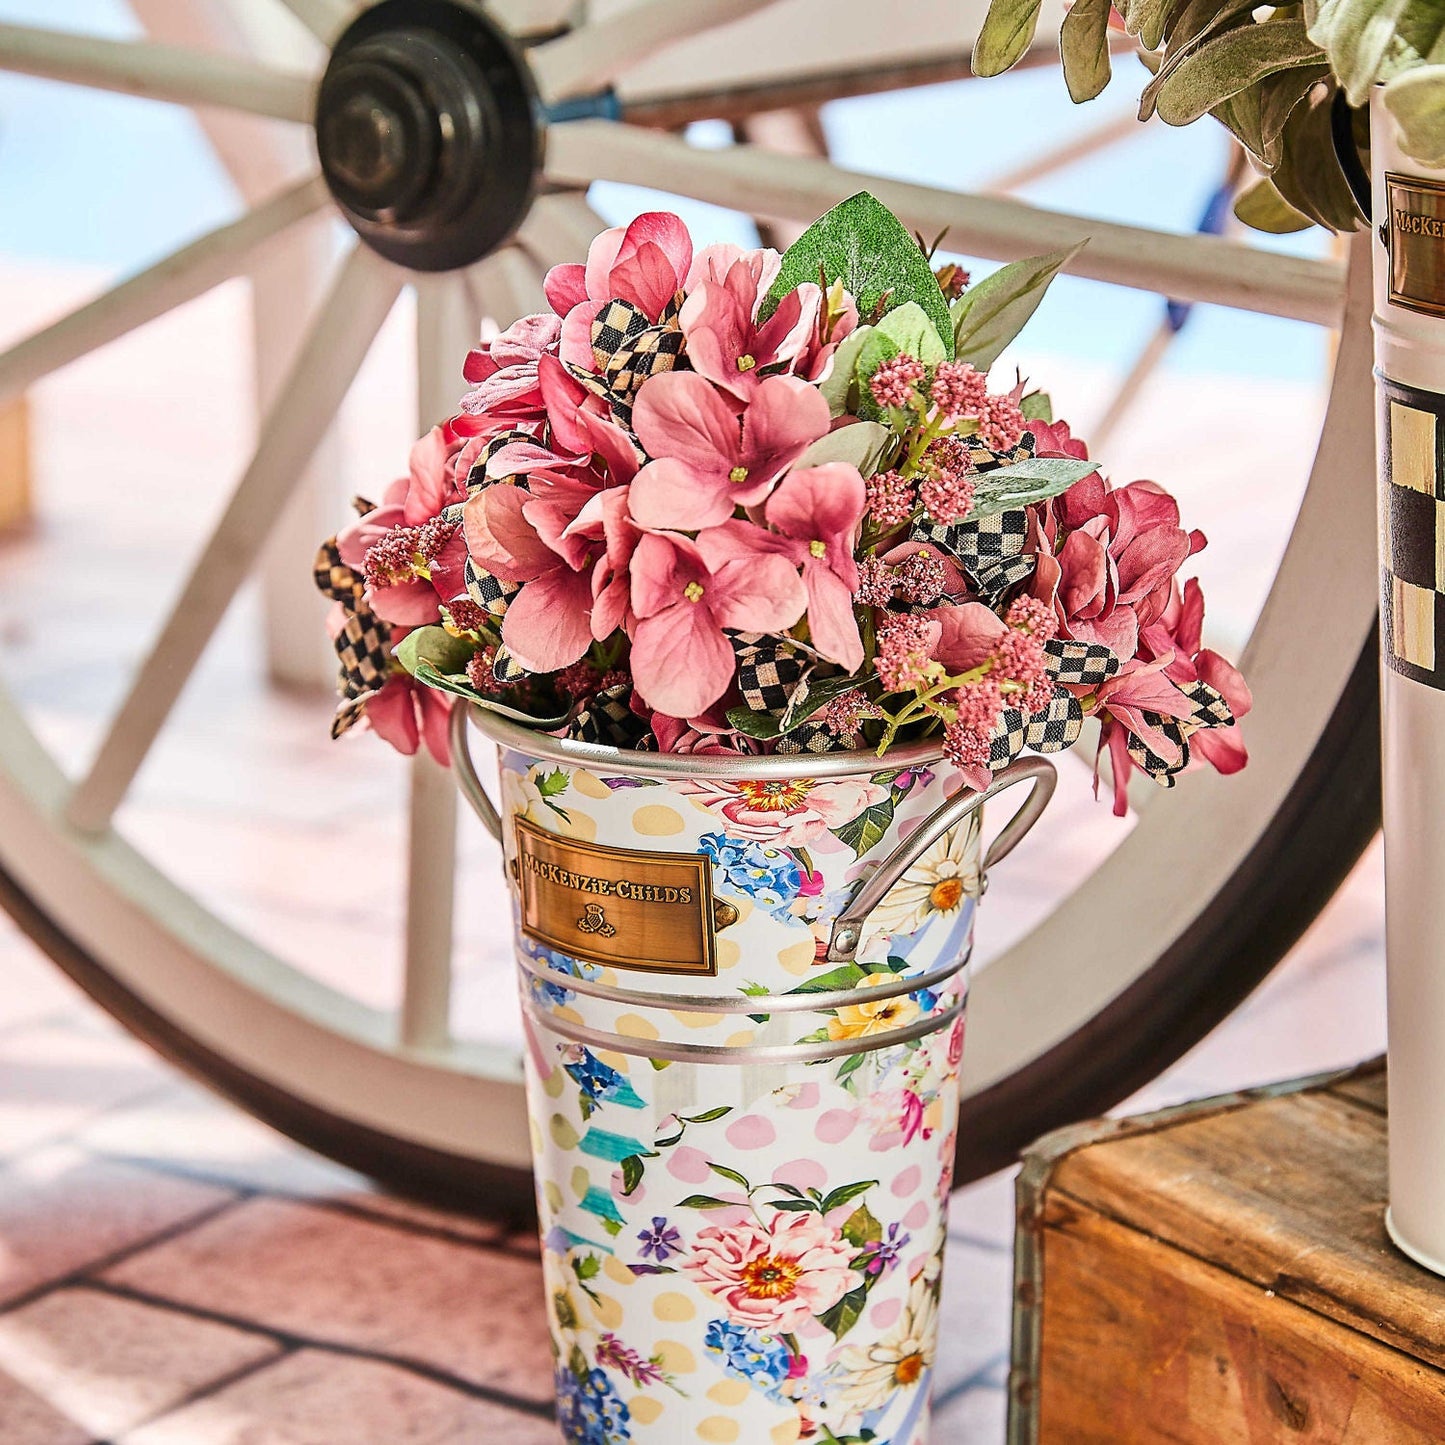 Hydrangea Bouquet Faux Flowers - Mauve - |VESIMI Design| Luxury and Rustic bathrooms online